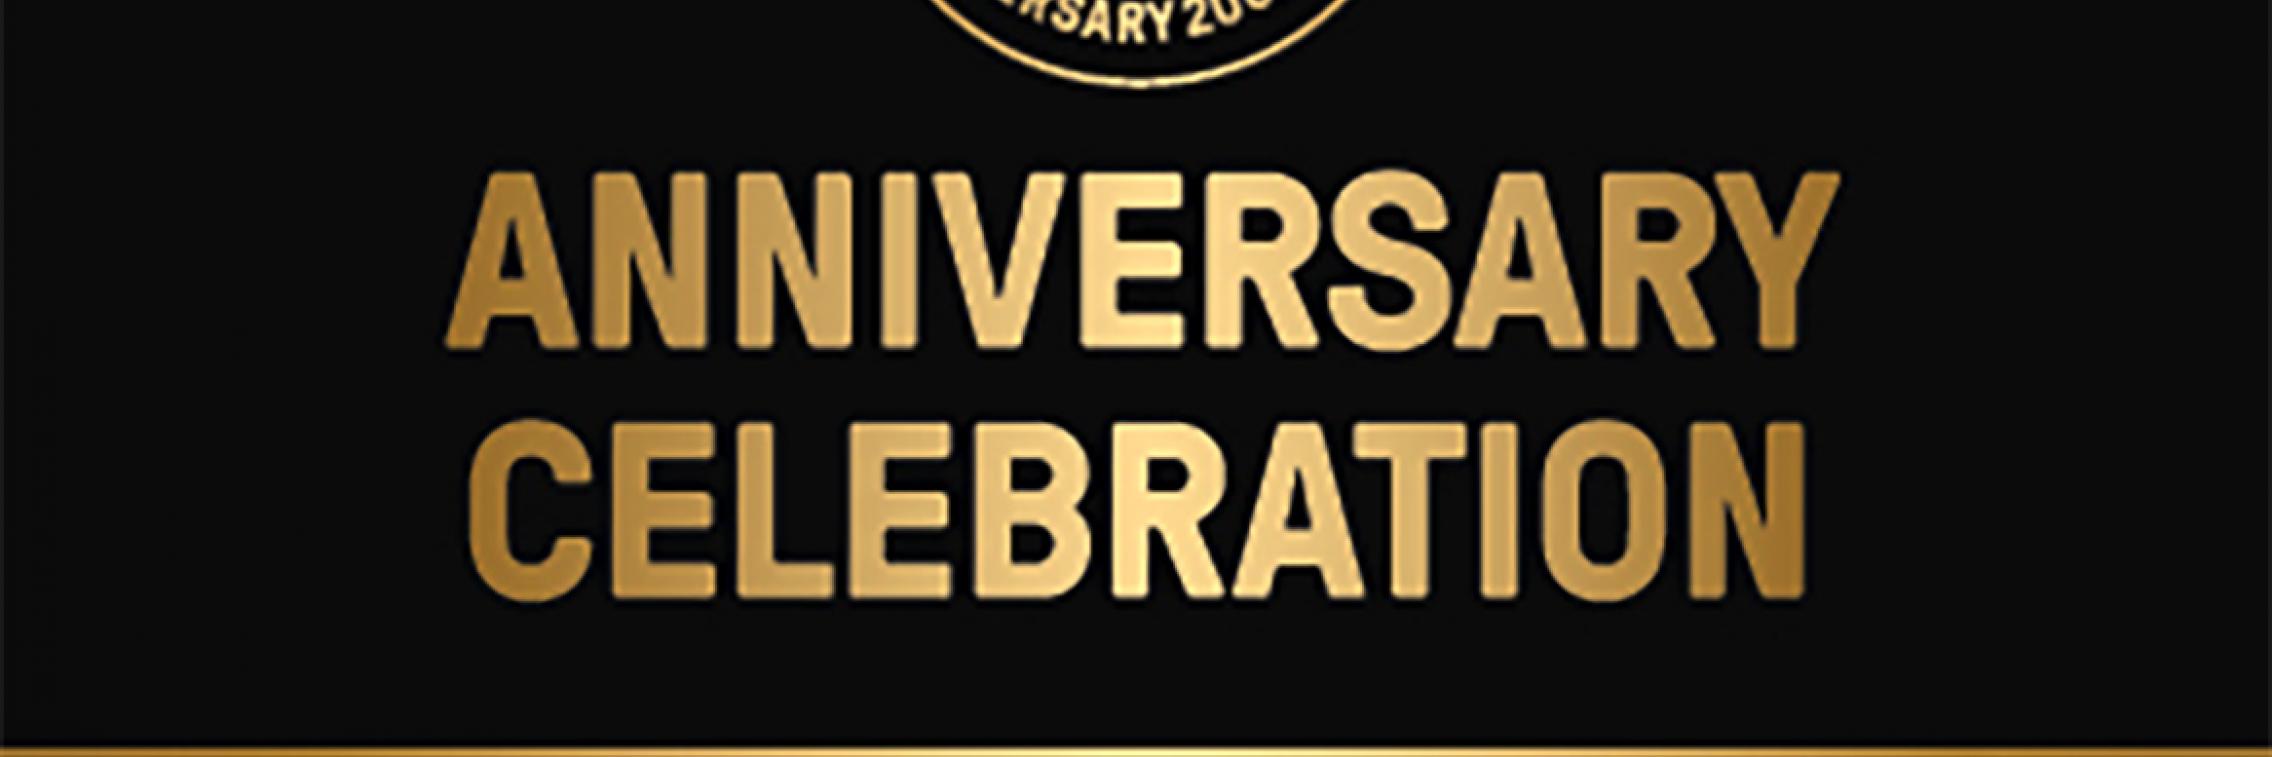 Anniversary Celebration Invite